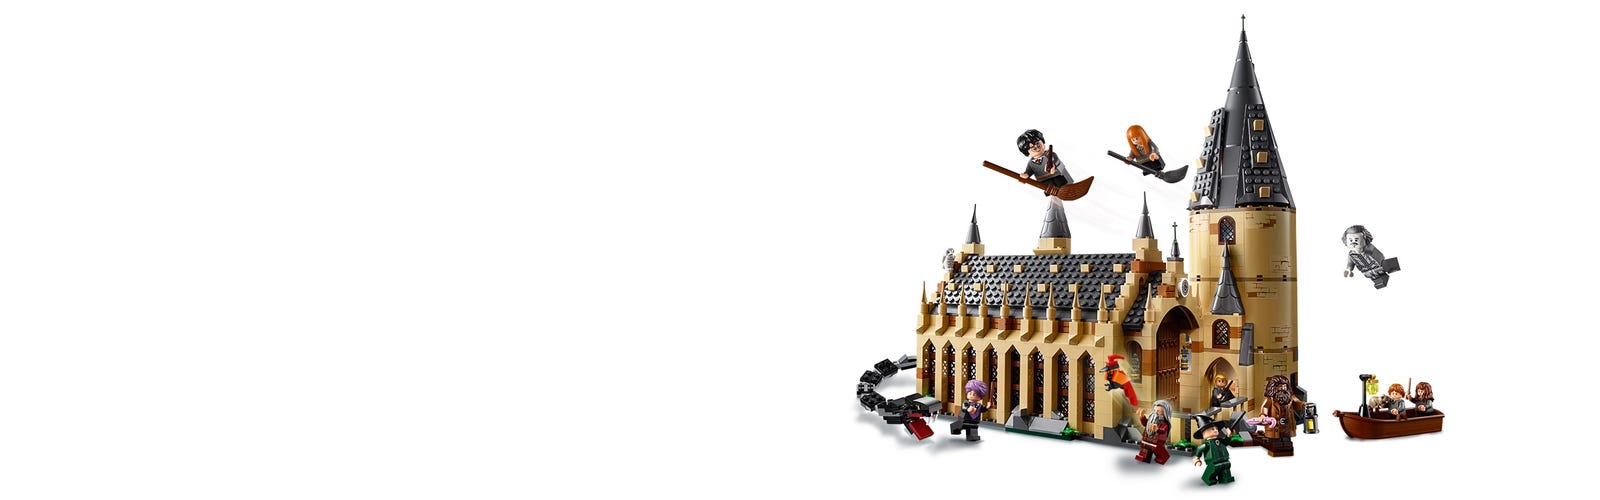 LEGO O Grande Salão de Hogwarts: Harry Potter (75954) - (878 peças